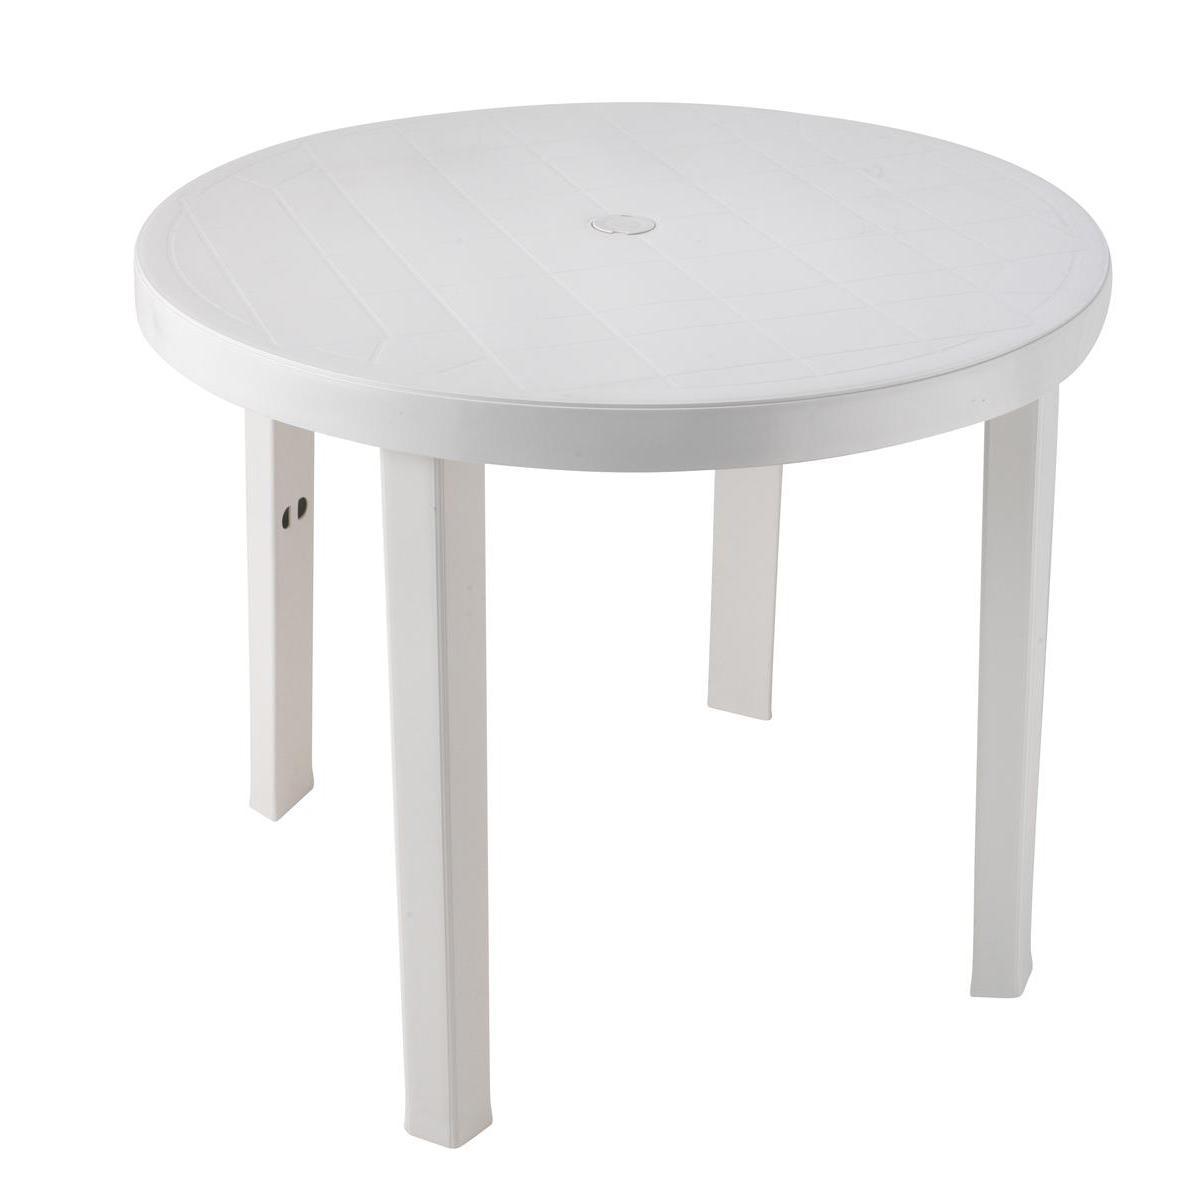 Table ronde en résine - D 87 x H 72 cm - blanc